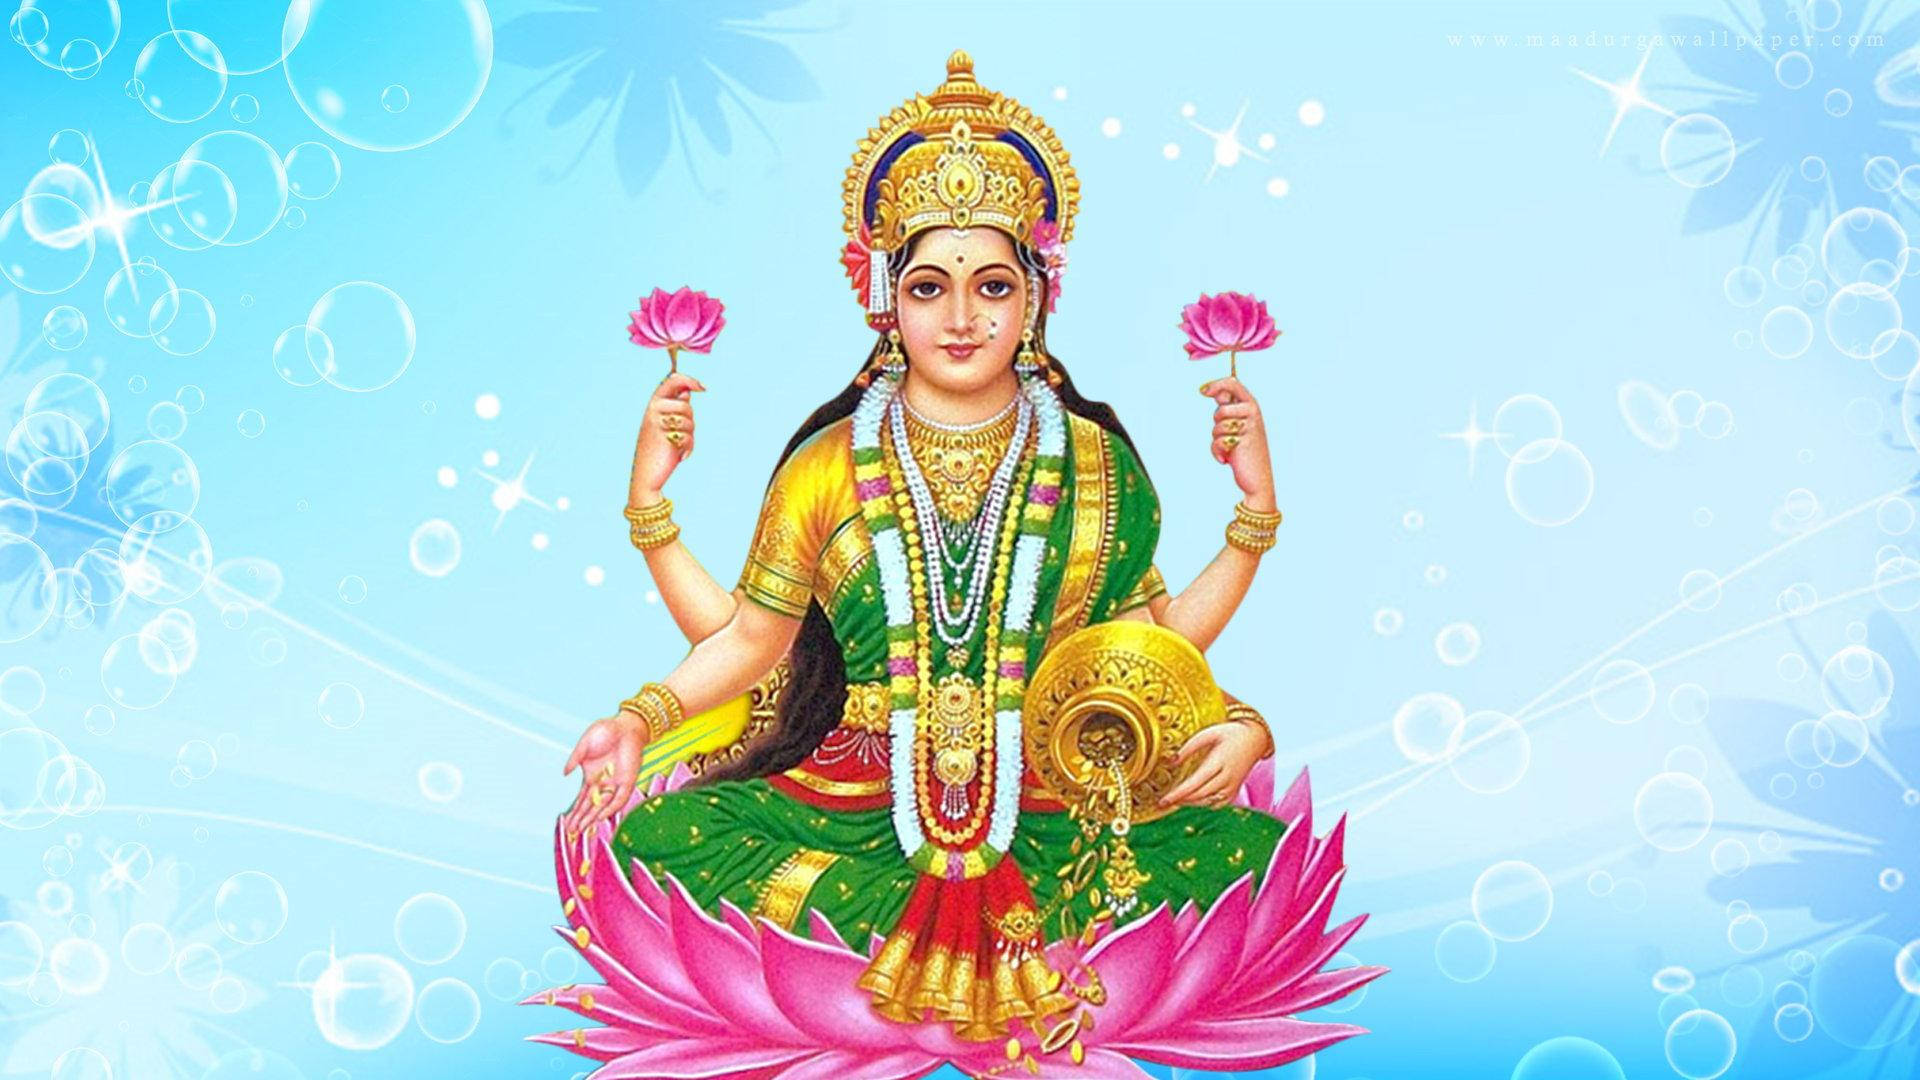 Lakshmi With Garland Wallpaper